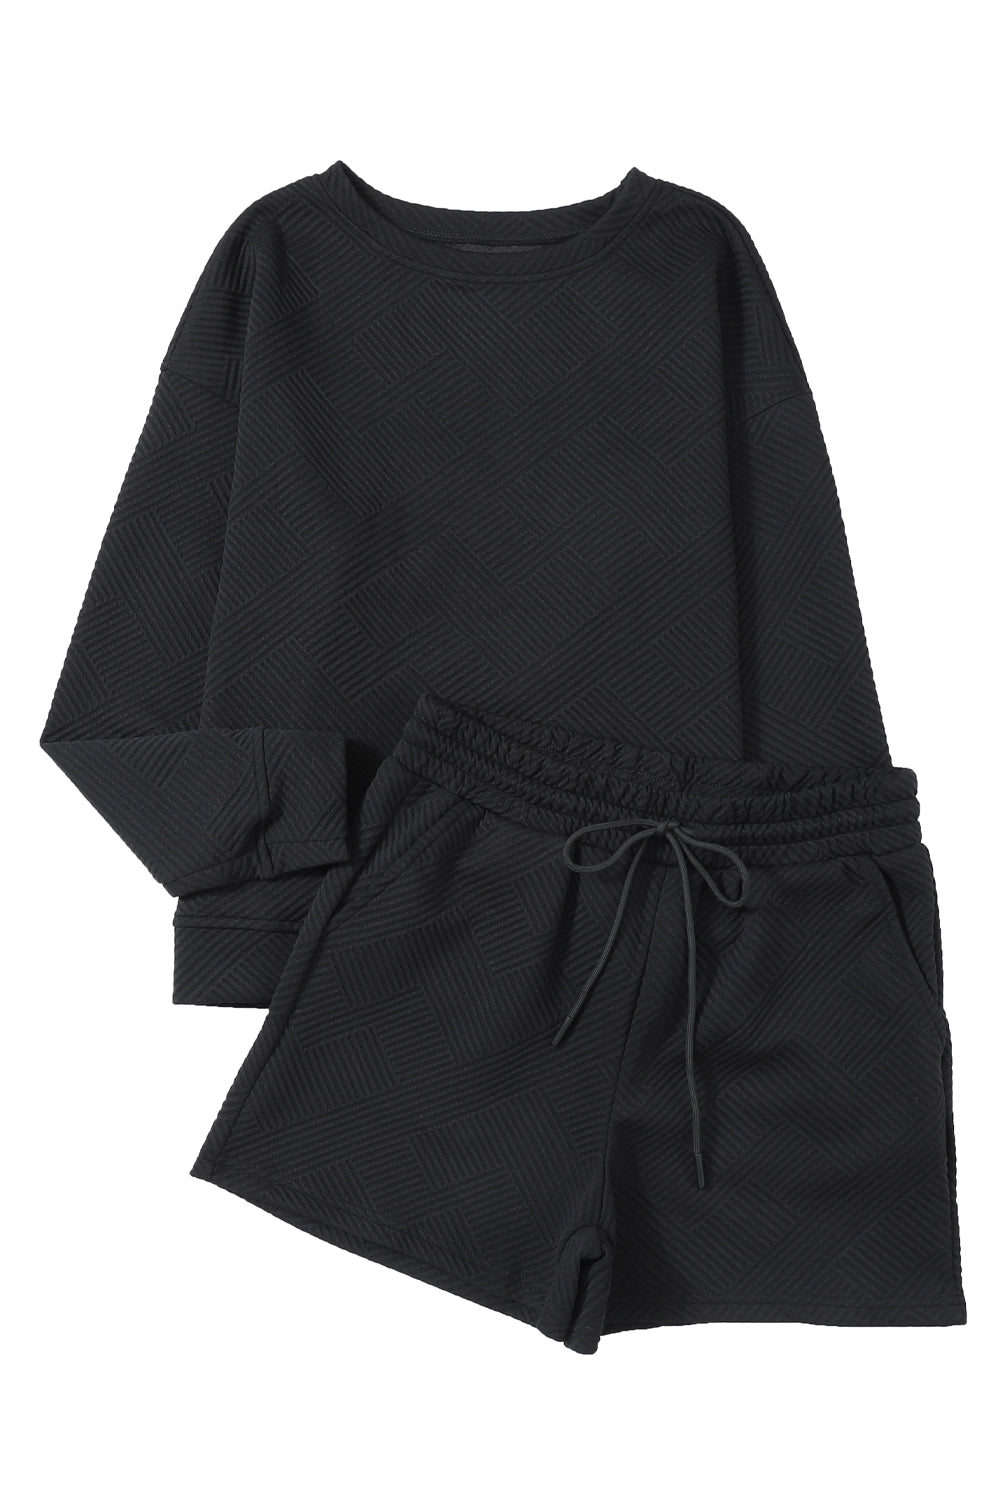 Gray Textured Long Sleeve Top & Drawstring Shorts Set